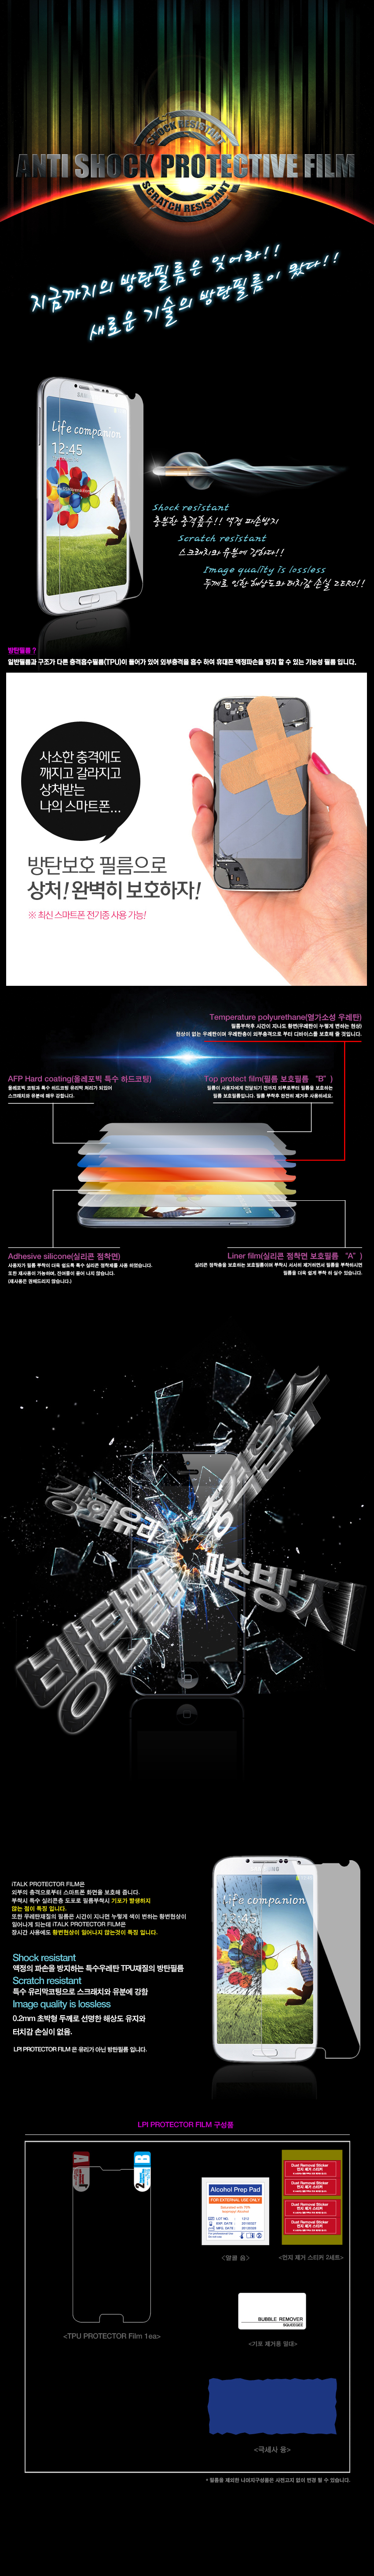 베가 R3 (iTALK) TPU 9H 방탄필름 8,500원 - 엘피아이 디지털, 모바일 액세서리, 보호필름, 기타 스마트폰 바보사랑 베가 R3 (iTALK) TPU 9H 방탄필름 8,500원 - 엘피아이 디지털, 모바일 액세서리, 보호필름, 기타 스마트폰 바보사랑